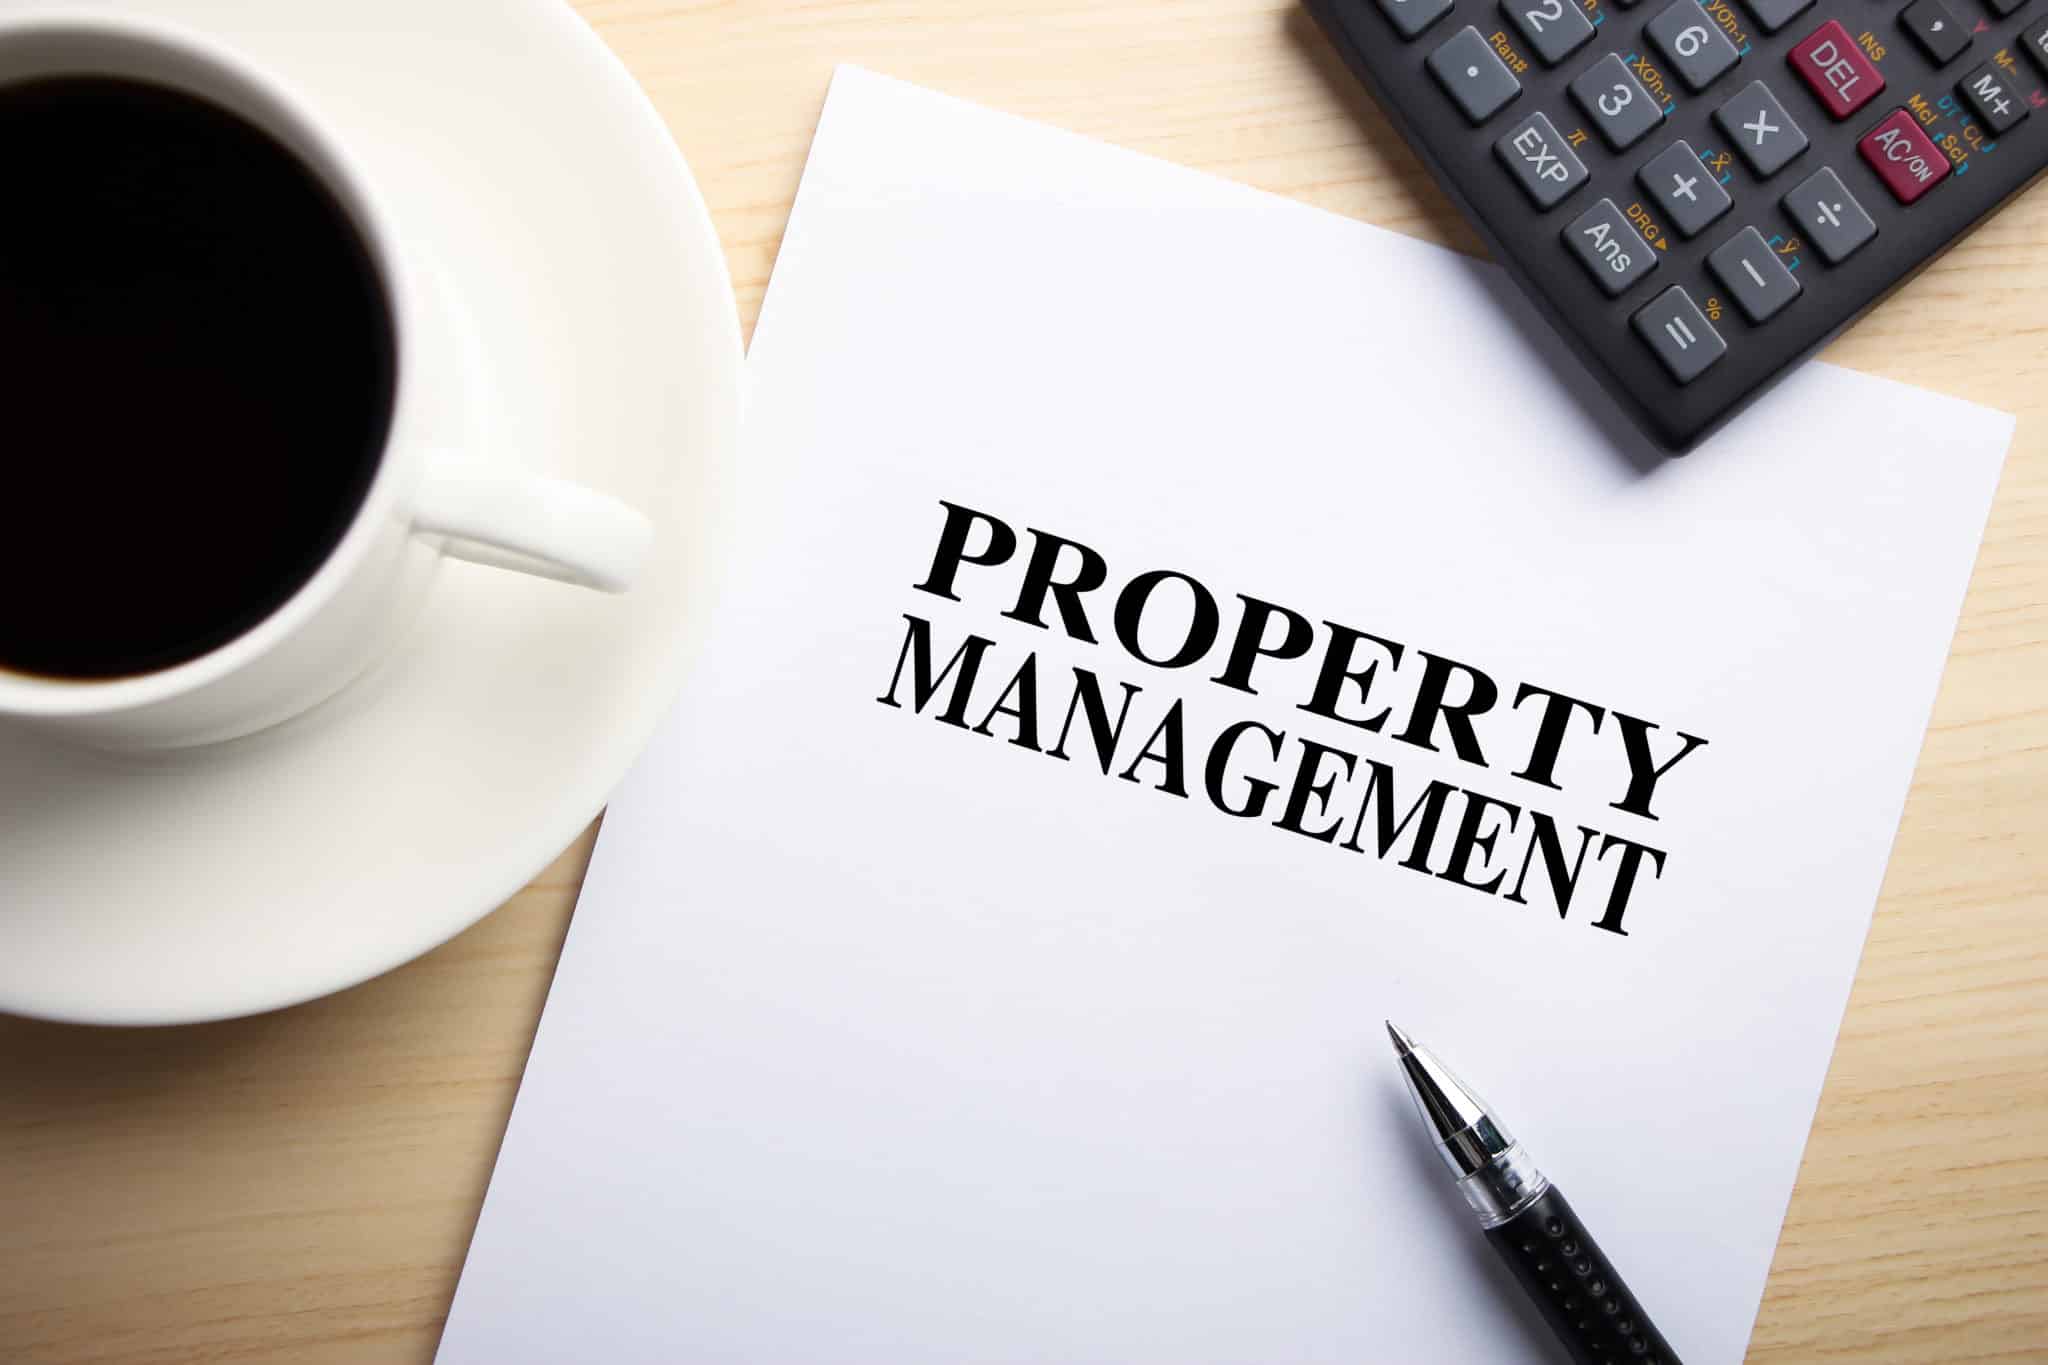 Property Management - WN Infotech